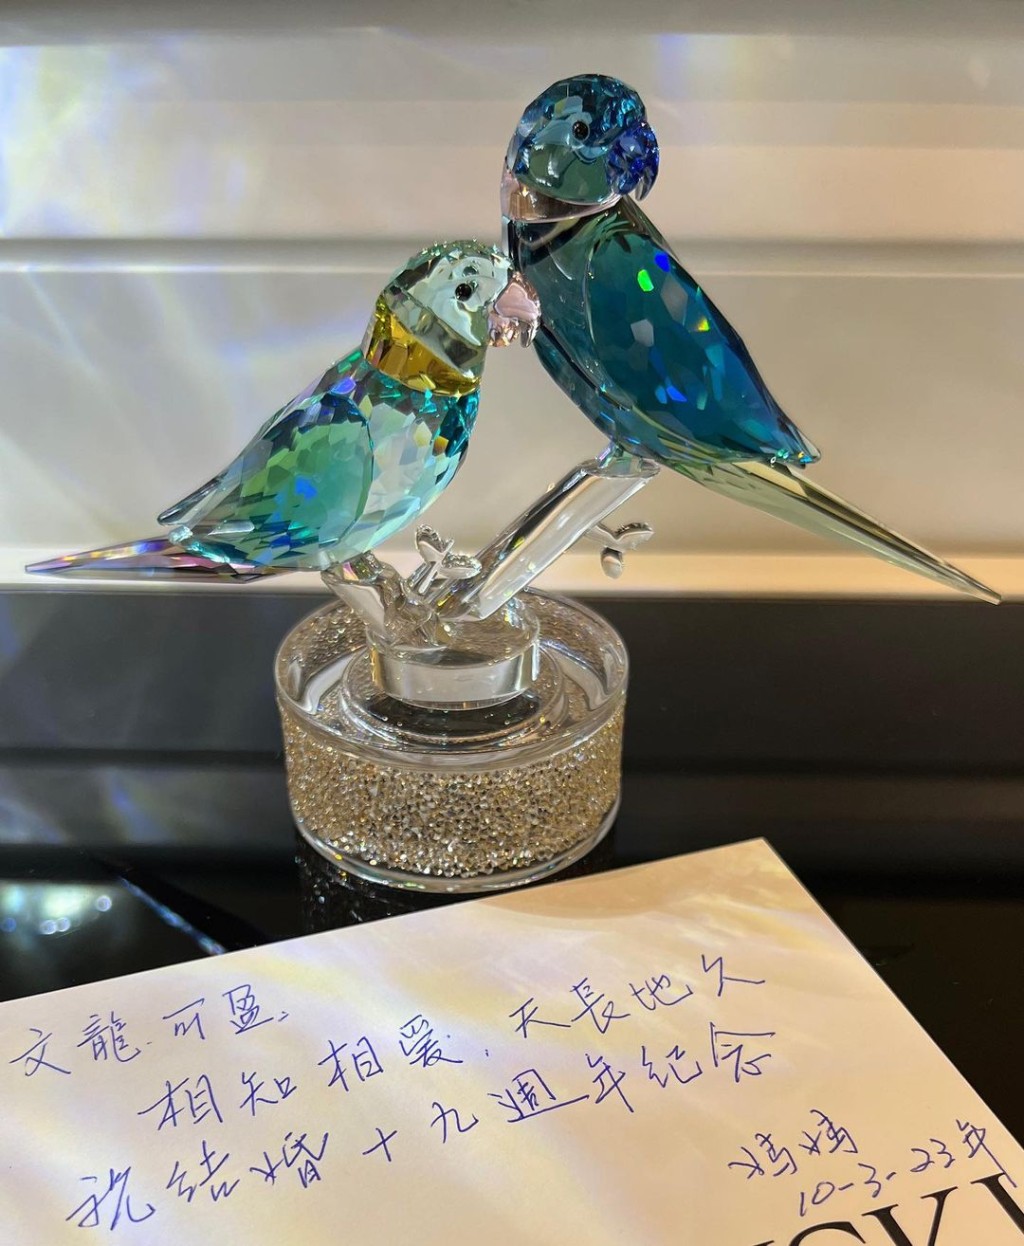 郭可盈除了分享媽媽所贈的水晶比翼鳥，亦分享由媽媽親手寫的祝賀語：「相知相愛、天長地久，祝結婚19周年紀念。」